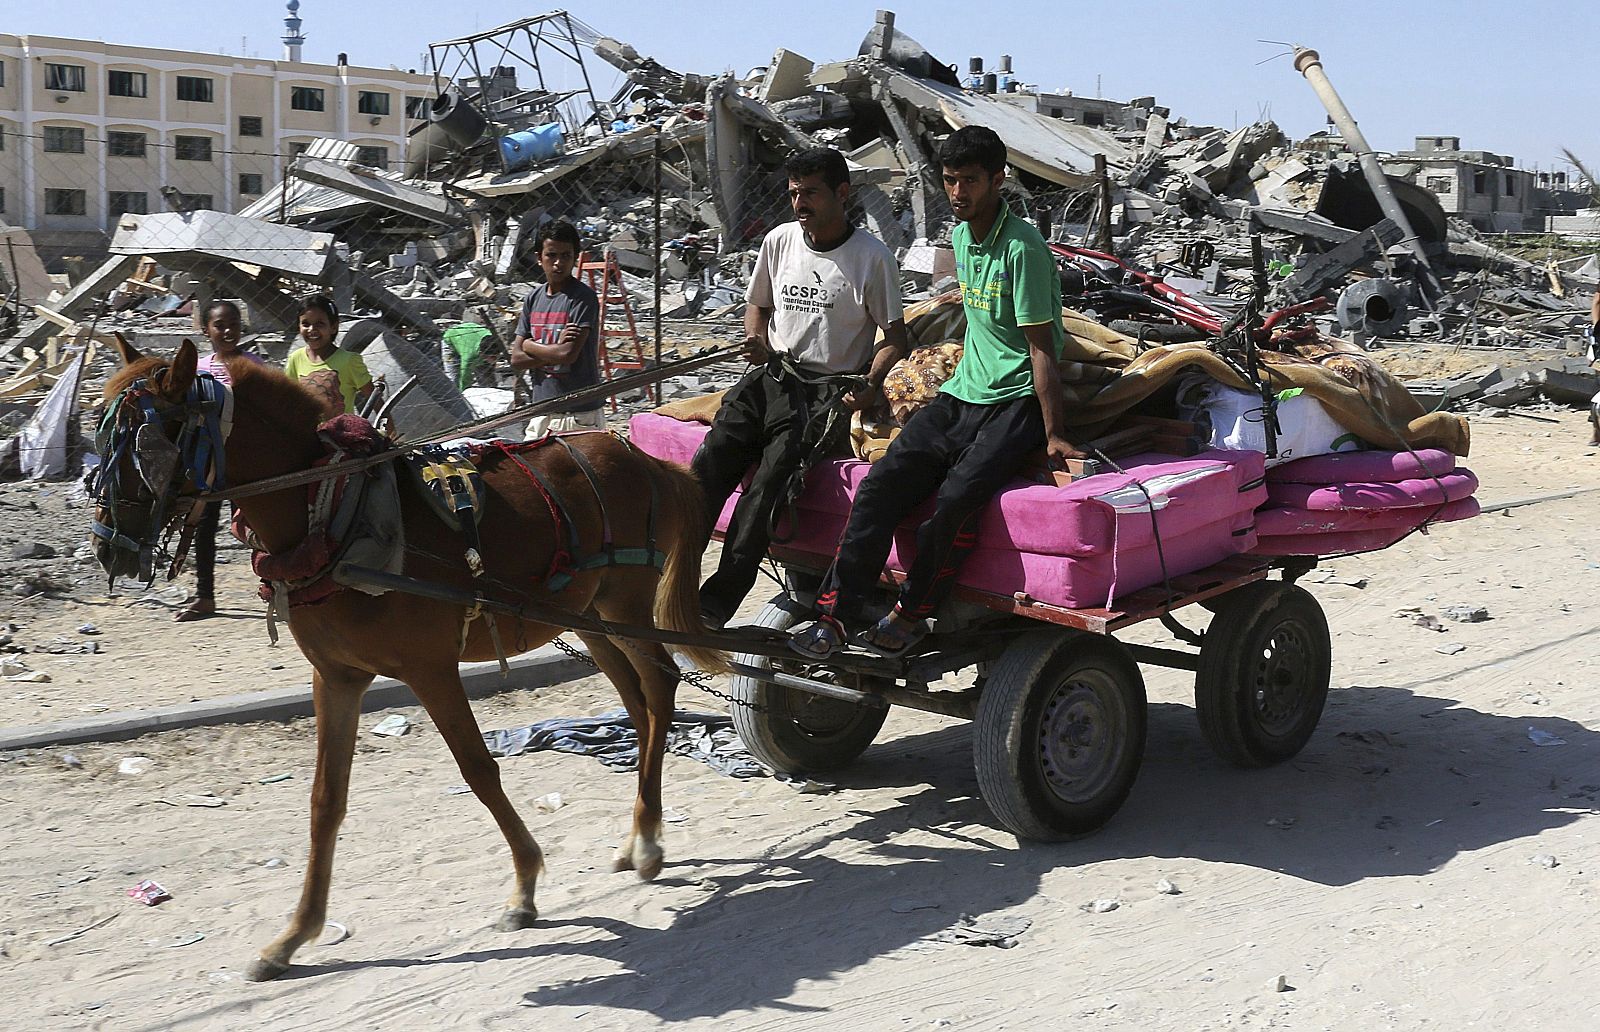 ISRAEL ANUNCIA QUE LA OPERACIÓN EN GAZA SE INTENSIFICARÁ EN LOS PRÓXIMOS DÍAS